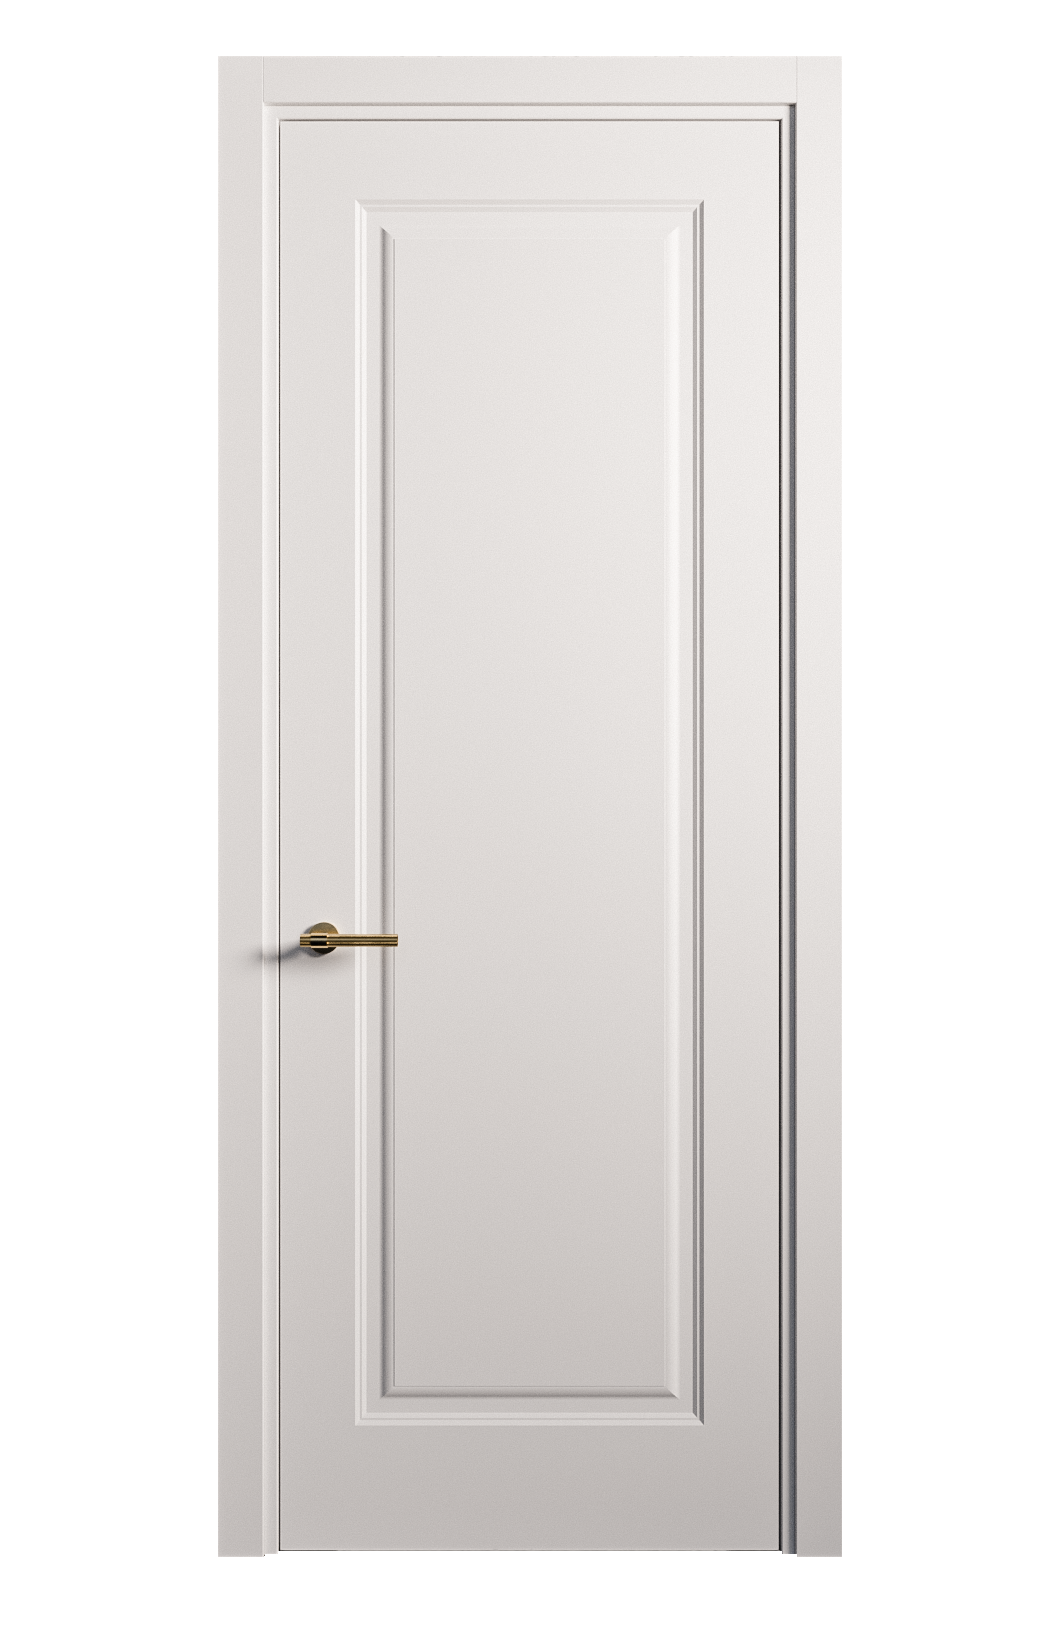 Межкомнатная дверь Вита глухая эмаль ral 9003 26108